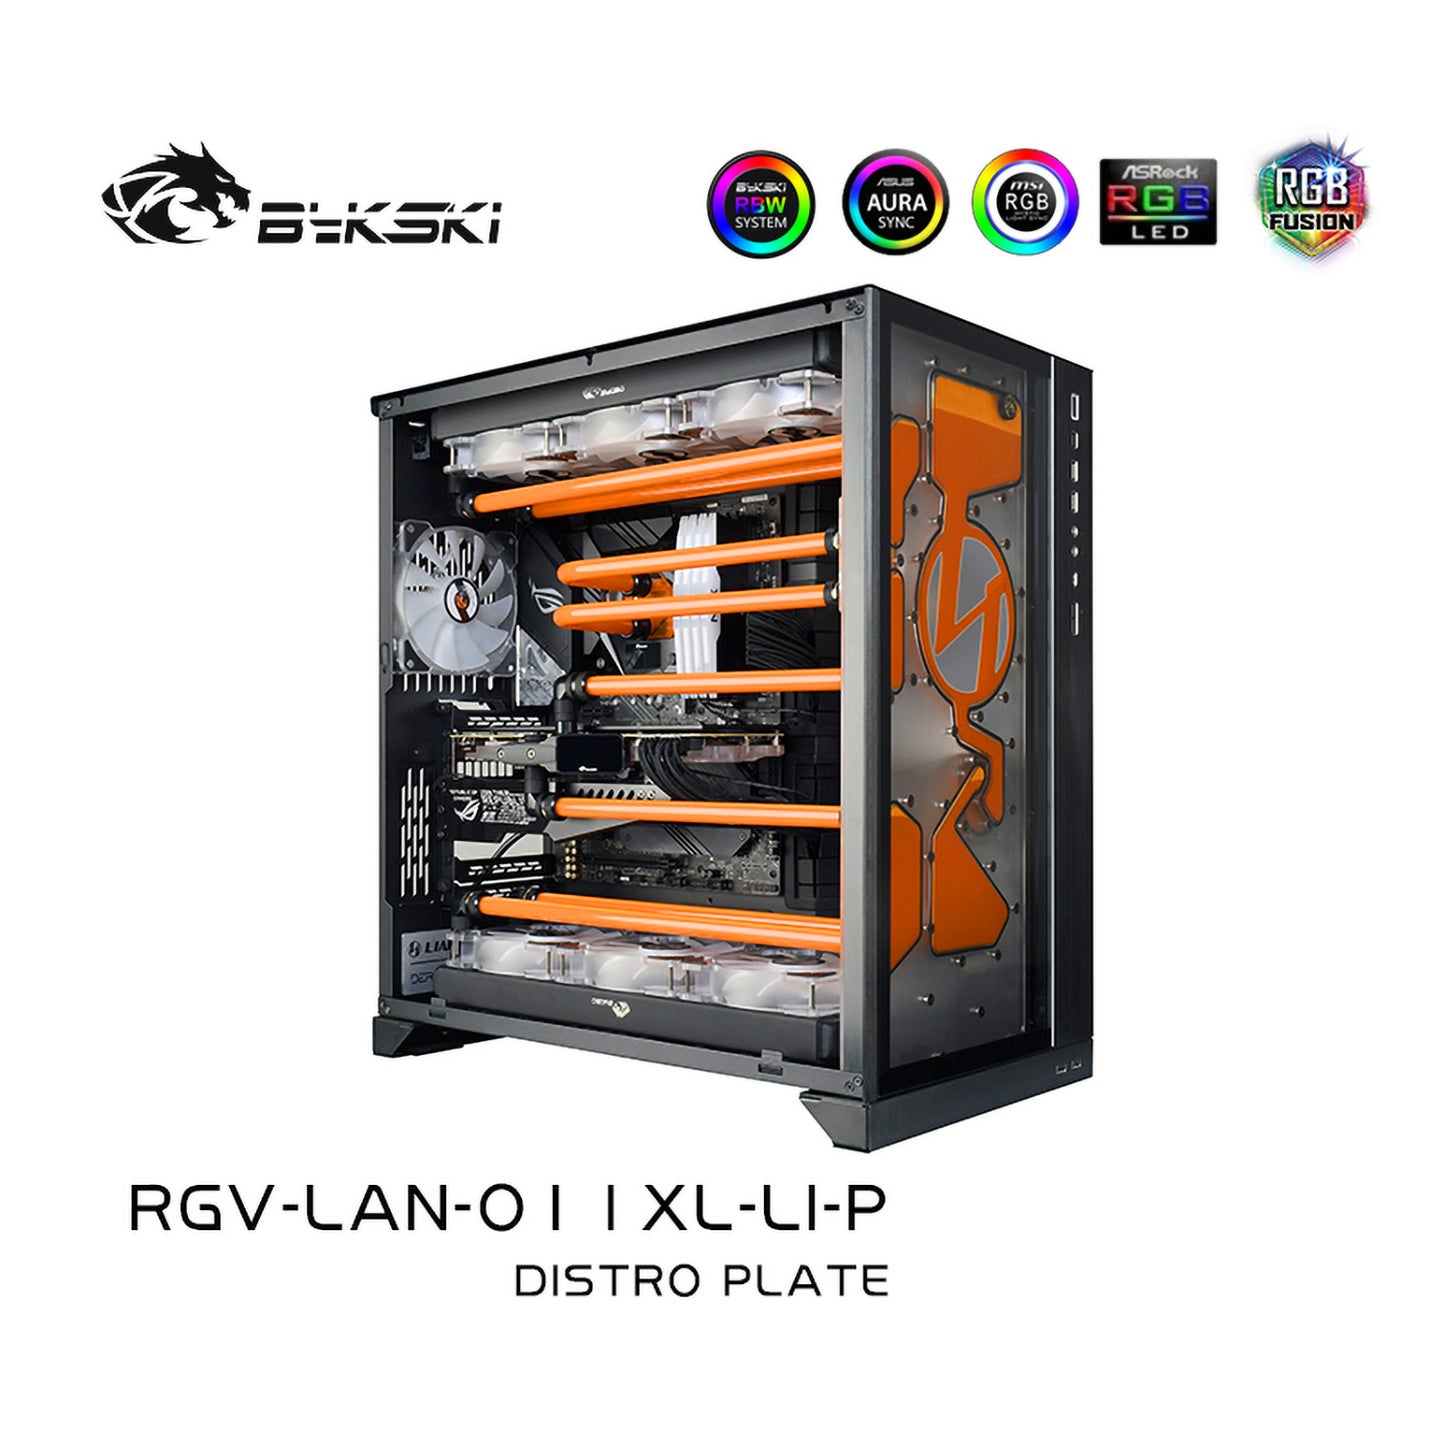 Bykski Front Distro Plate For Lianli O11 Dynamic XL Case, Acrylic Front Plate Waterway Board Combo DDC Pump, 5V A-RGB , RGV-LAN-O11XL-LI-P